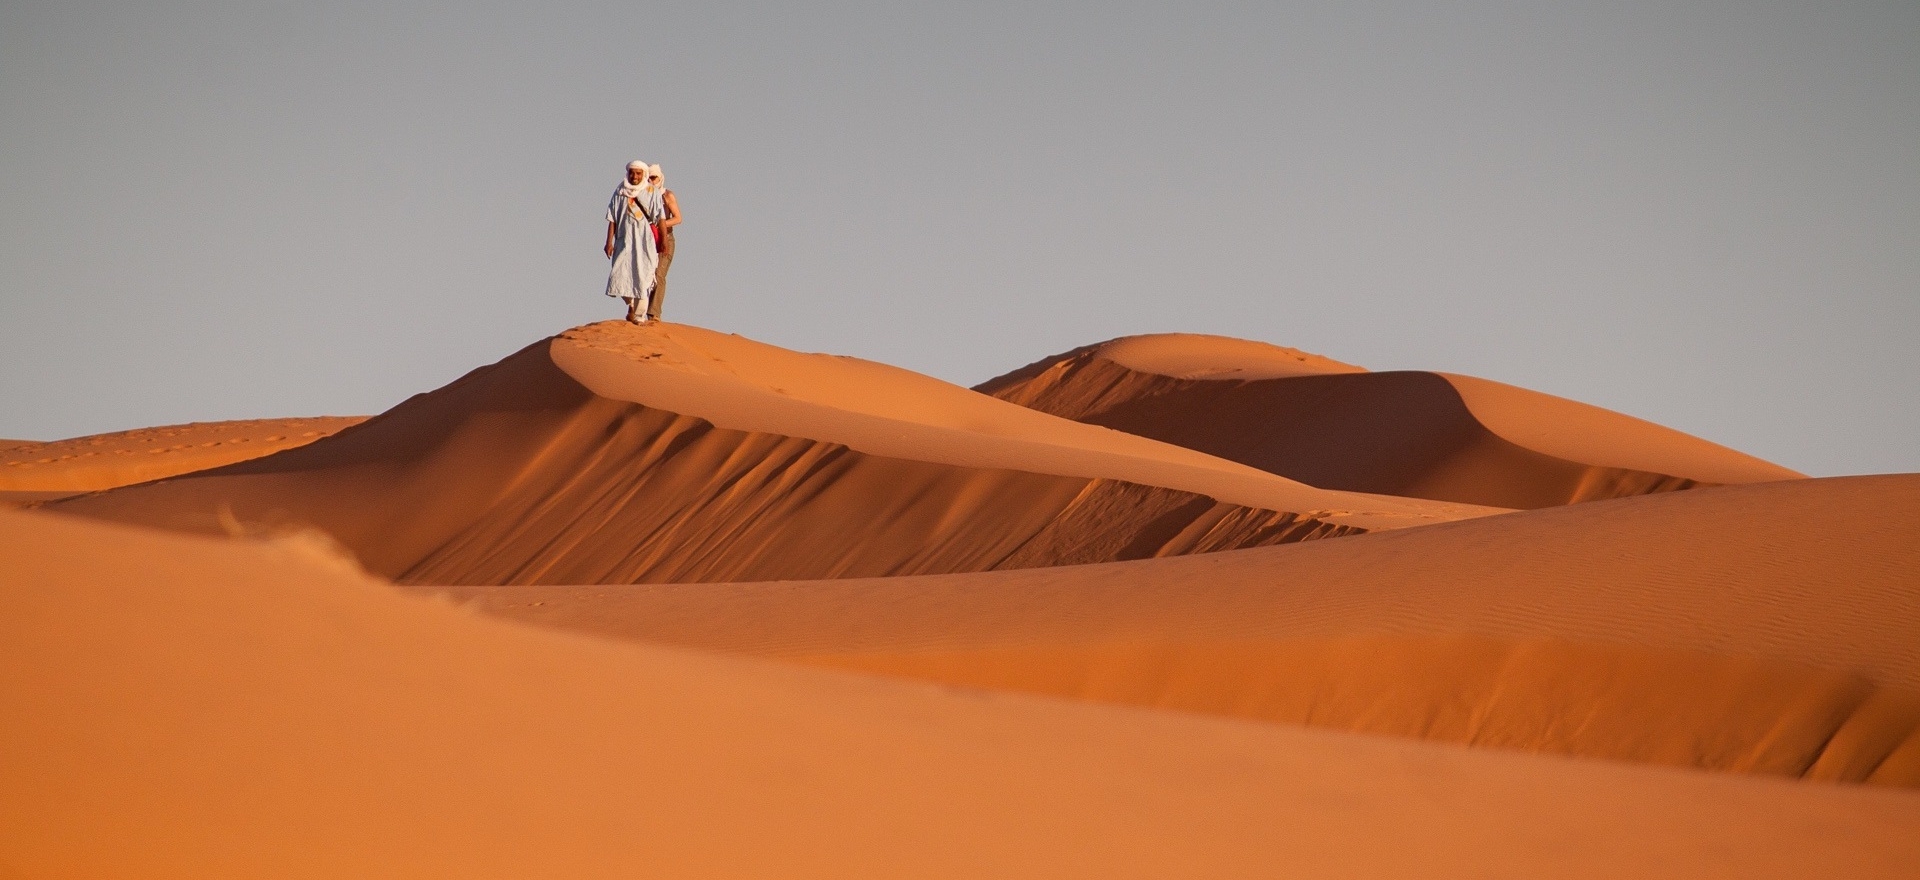 viaggi organizzati in Marocco deserto con uomini